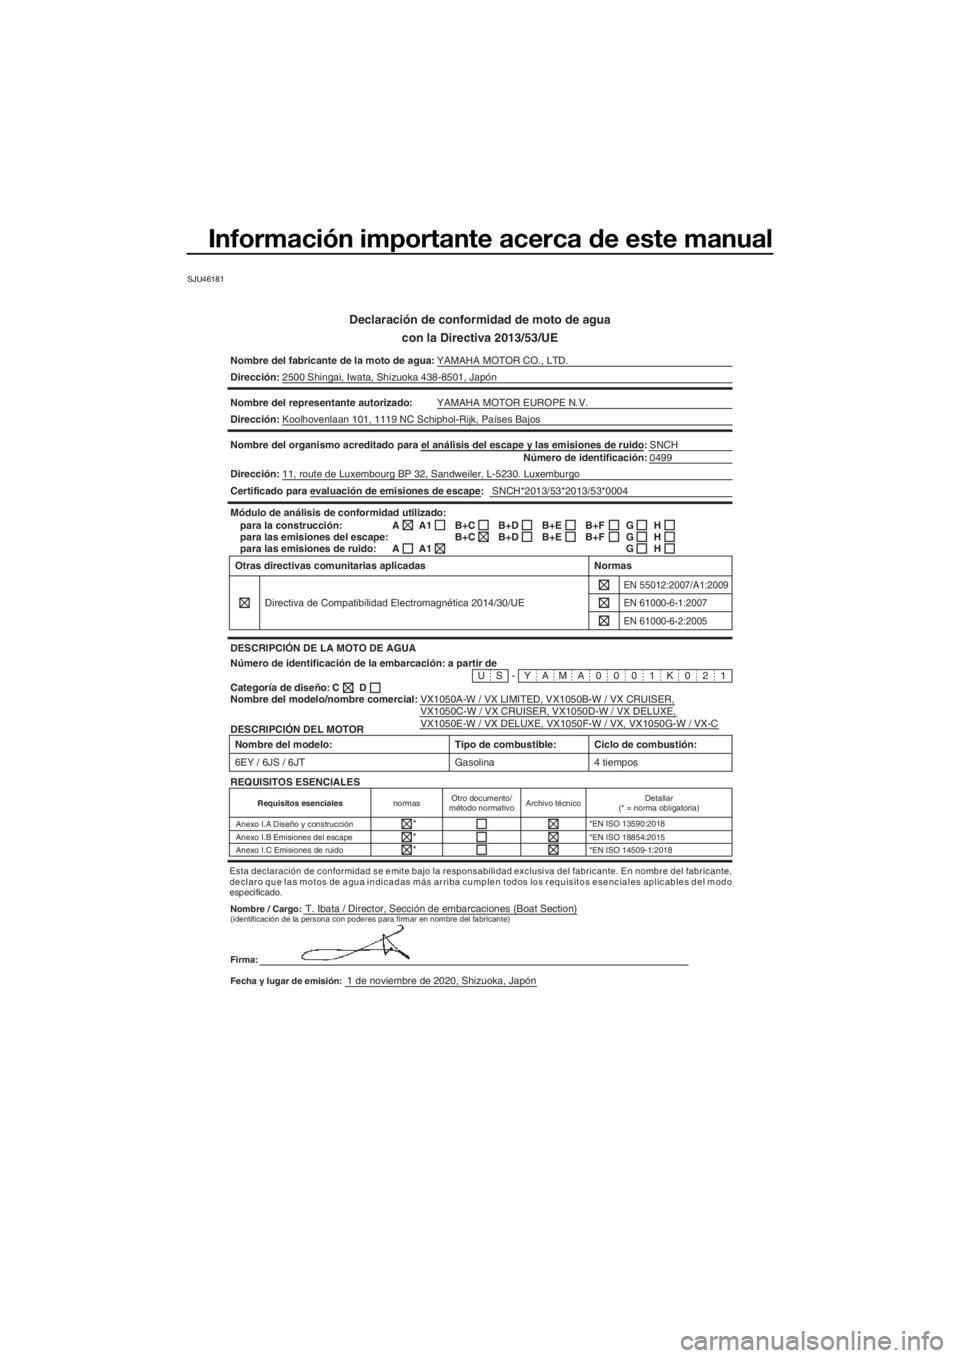 YAMAHA VX 2021  Manuale de Empleo (in Spanish) Información importante acerca de este manual
SJU46181
Declaración de conformidad de moto de agua
con la Directiva 2013/53/UE
Nombre del fabricante de la moto de a gua:YAMAHA MOTOR CO., LTD.
Direcci�